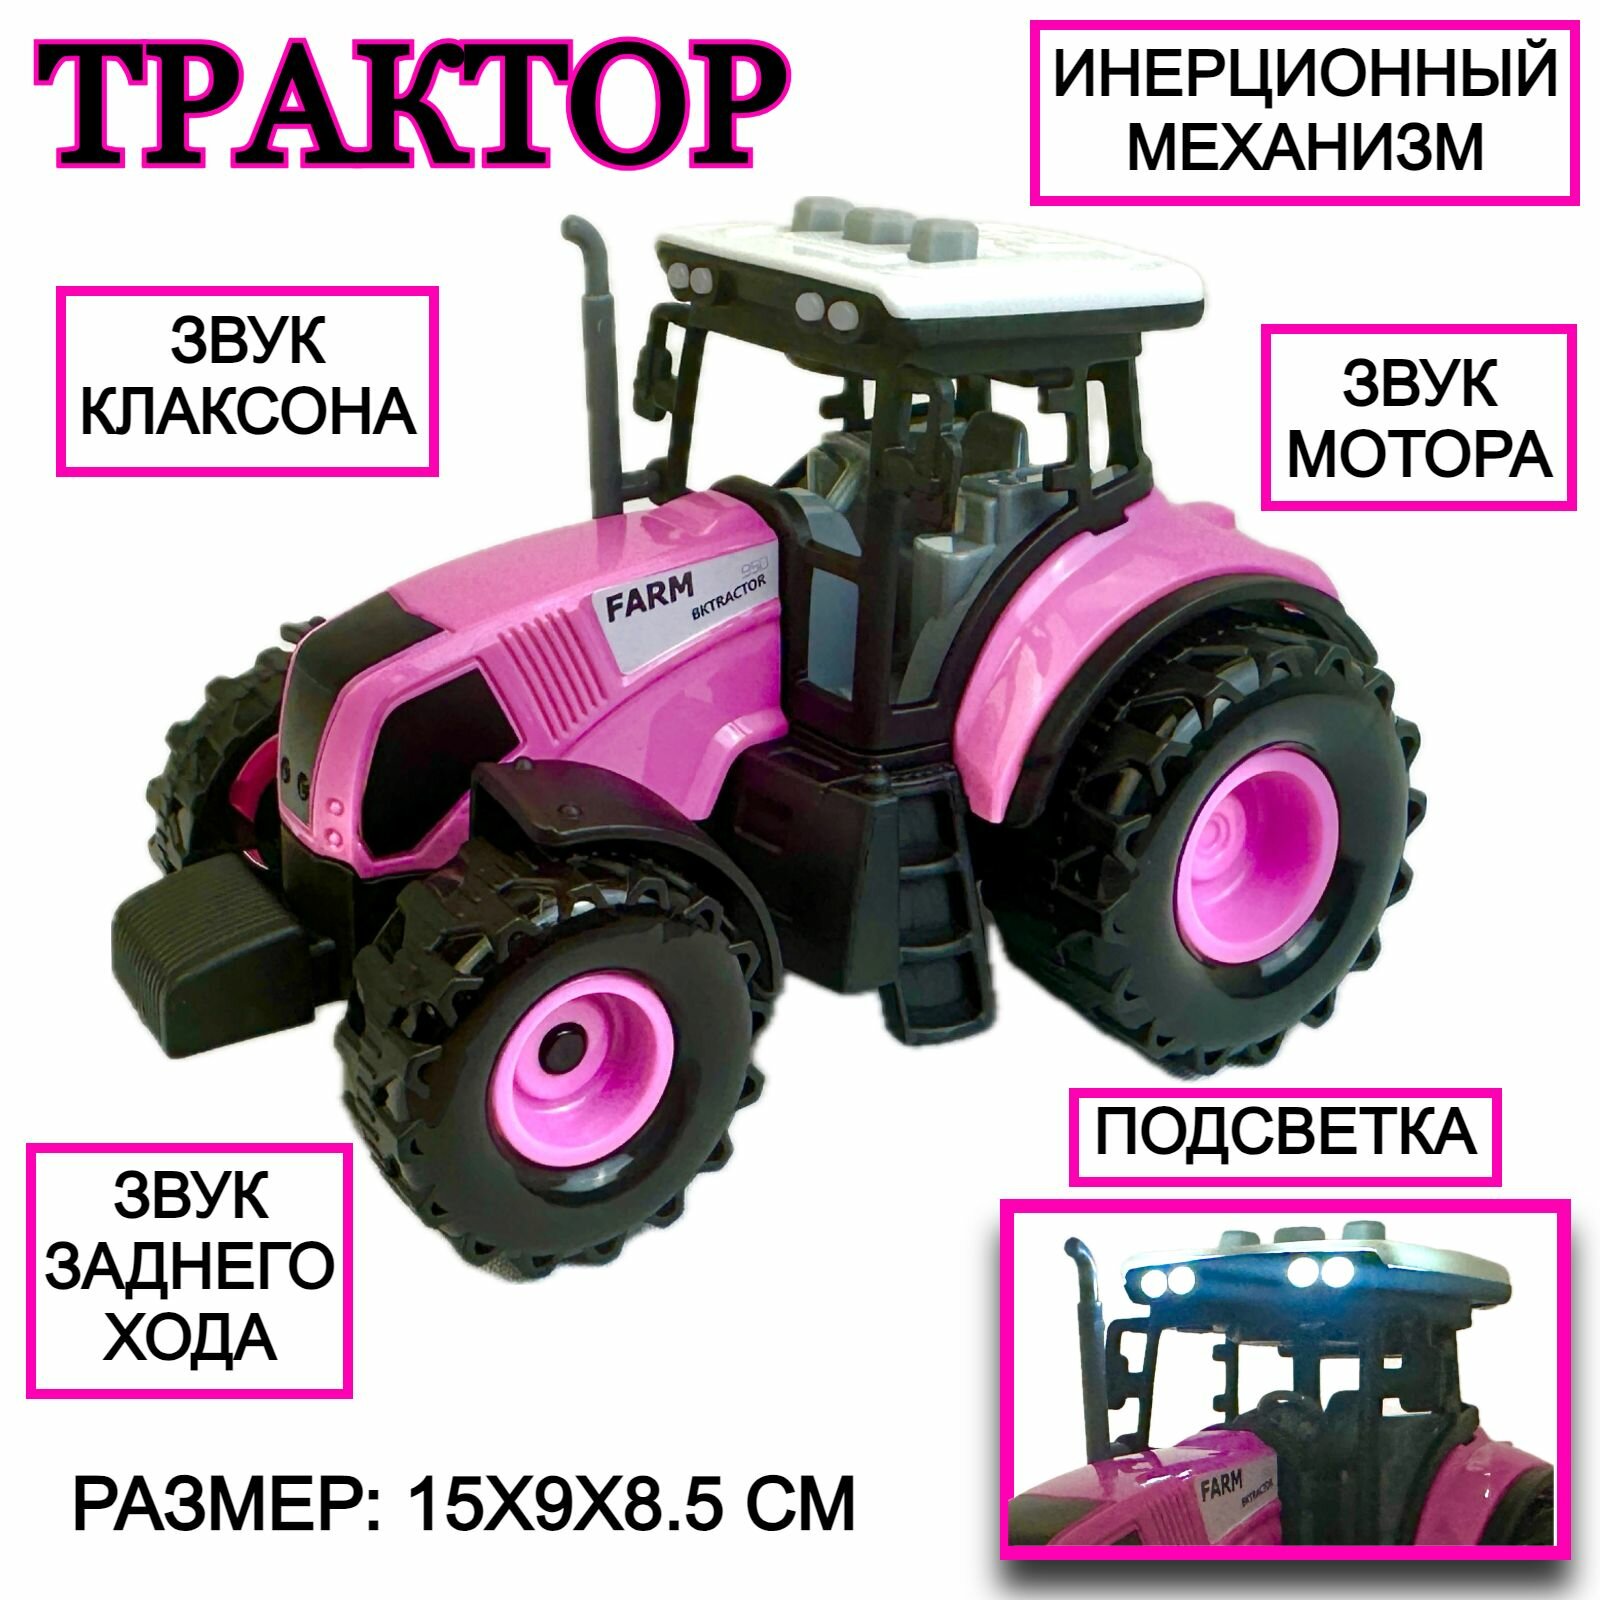 Трактор инерционный, светятся фары, звук клаксона, мотора, заднего хода, детская игрушка, инерционная машинка, 15х9х8 см